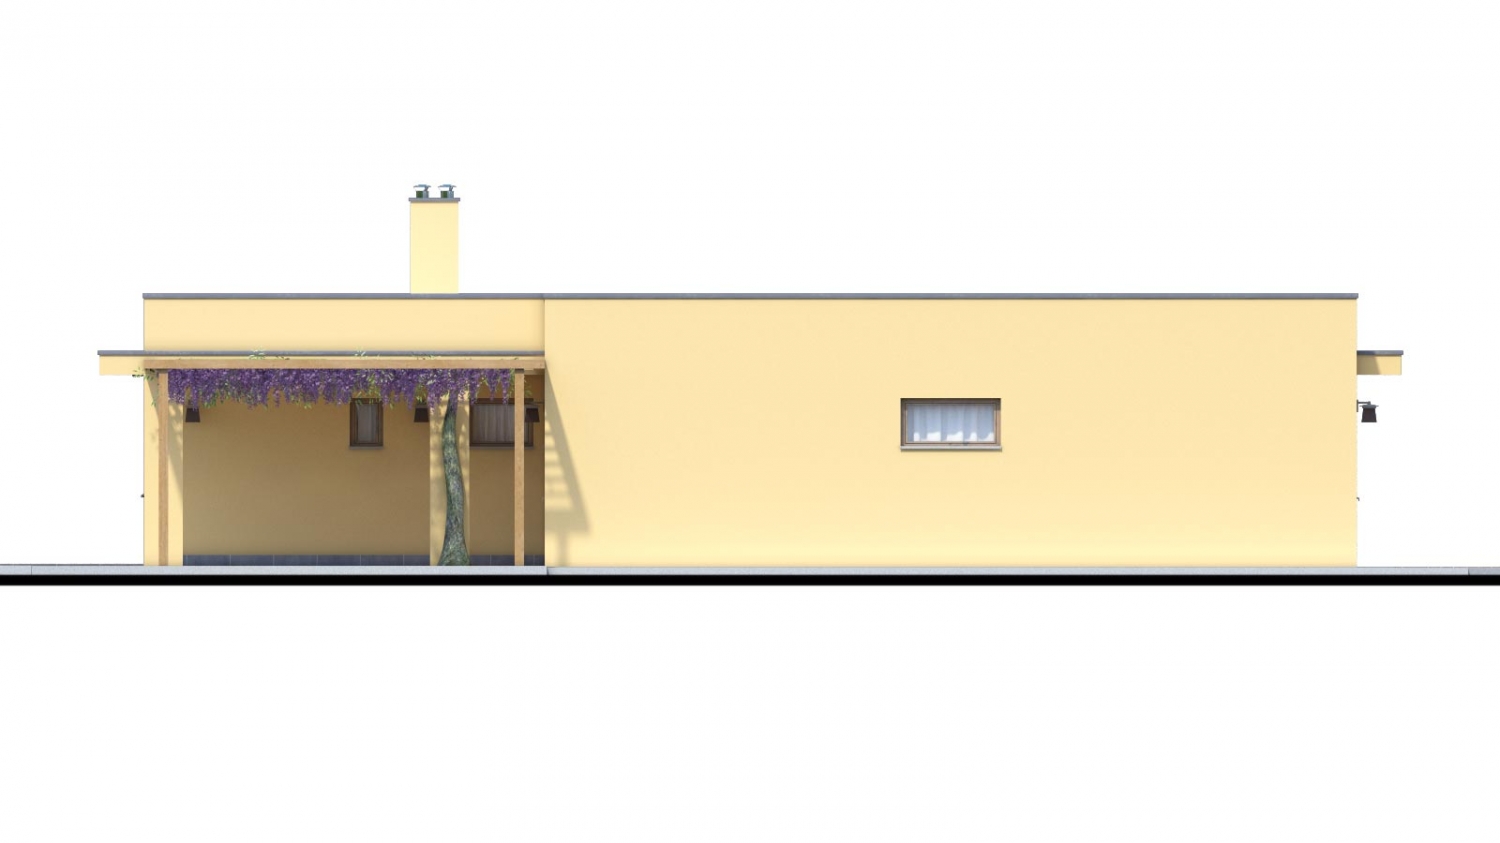 Zrkadlový pohľad 2. - Moderní dům ve tvaru L s rohovými okny a s krytým stáním pro auto. Obytné místnosti jsou orientovány do zahrady.